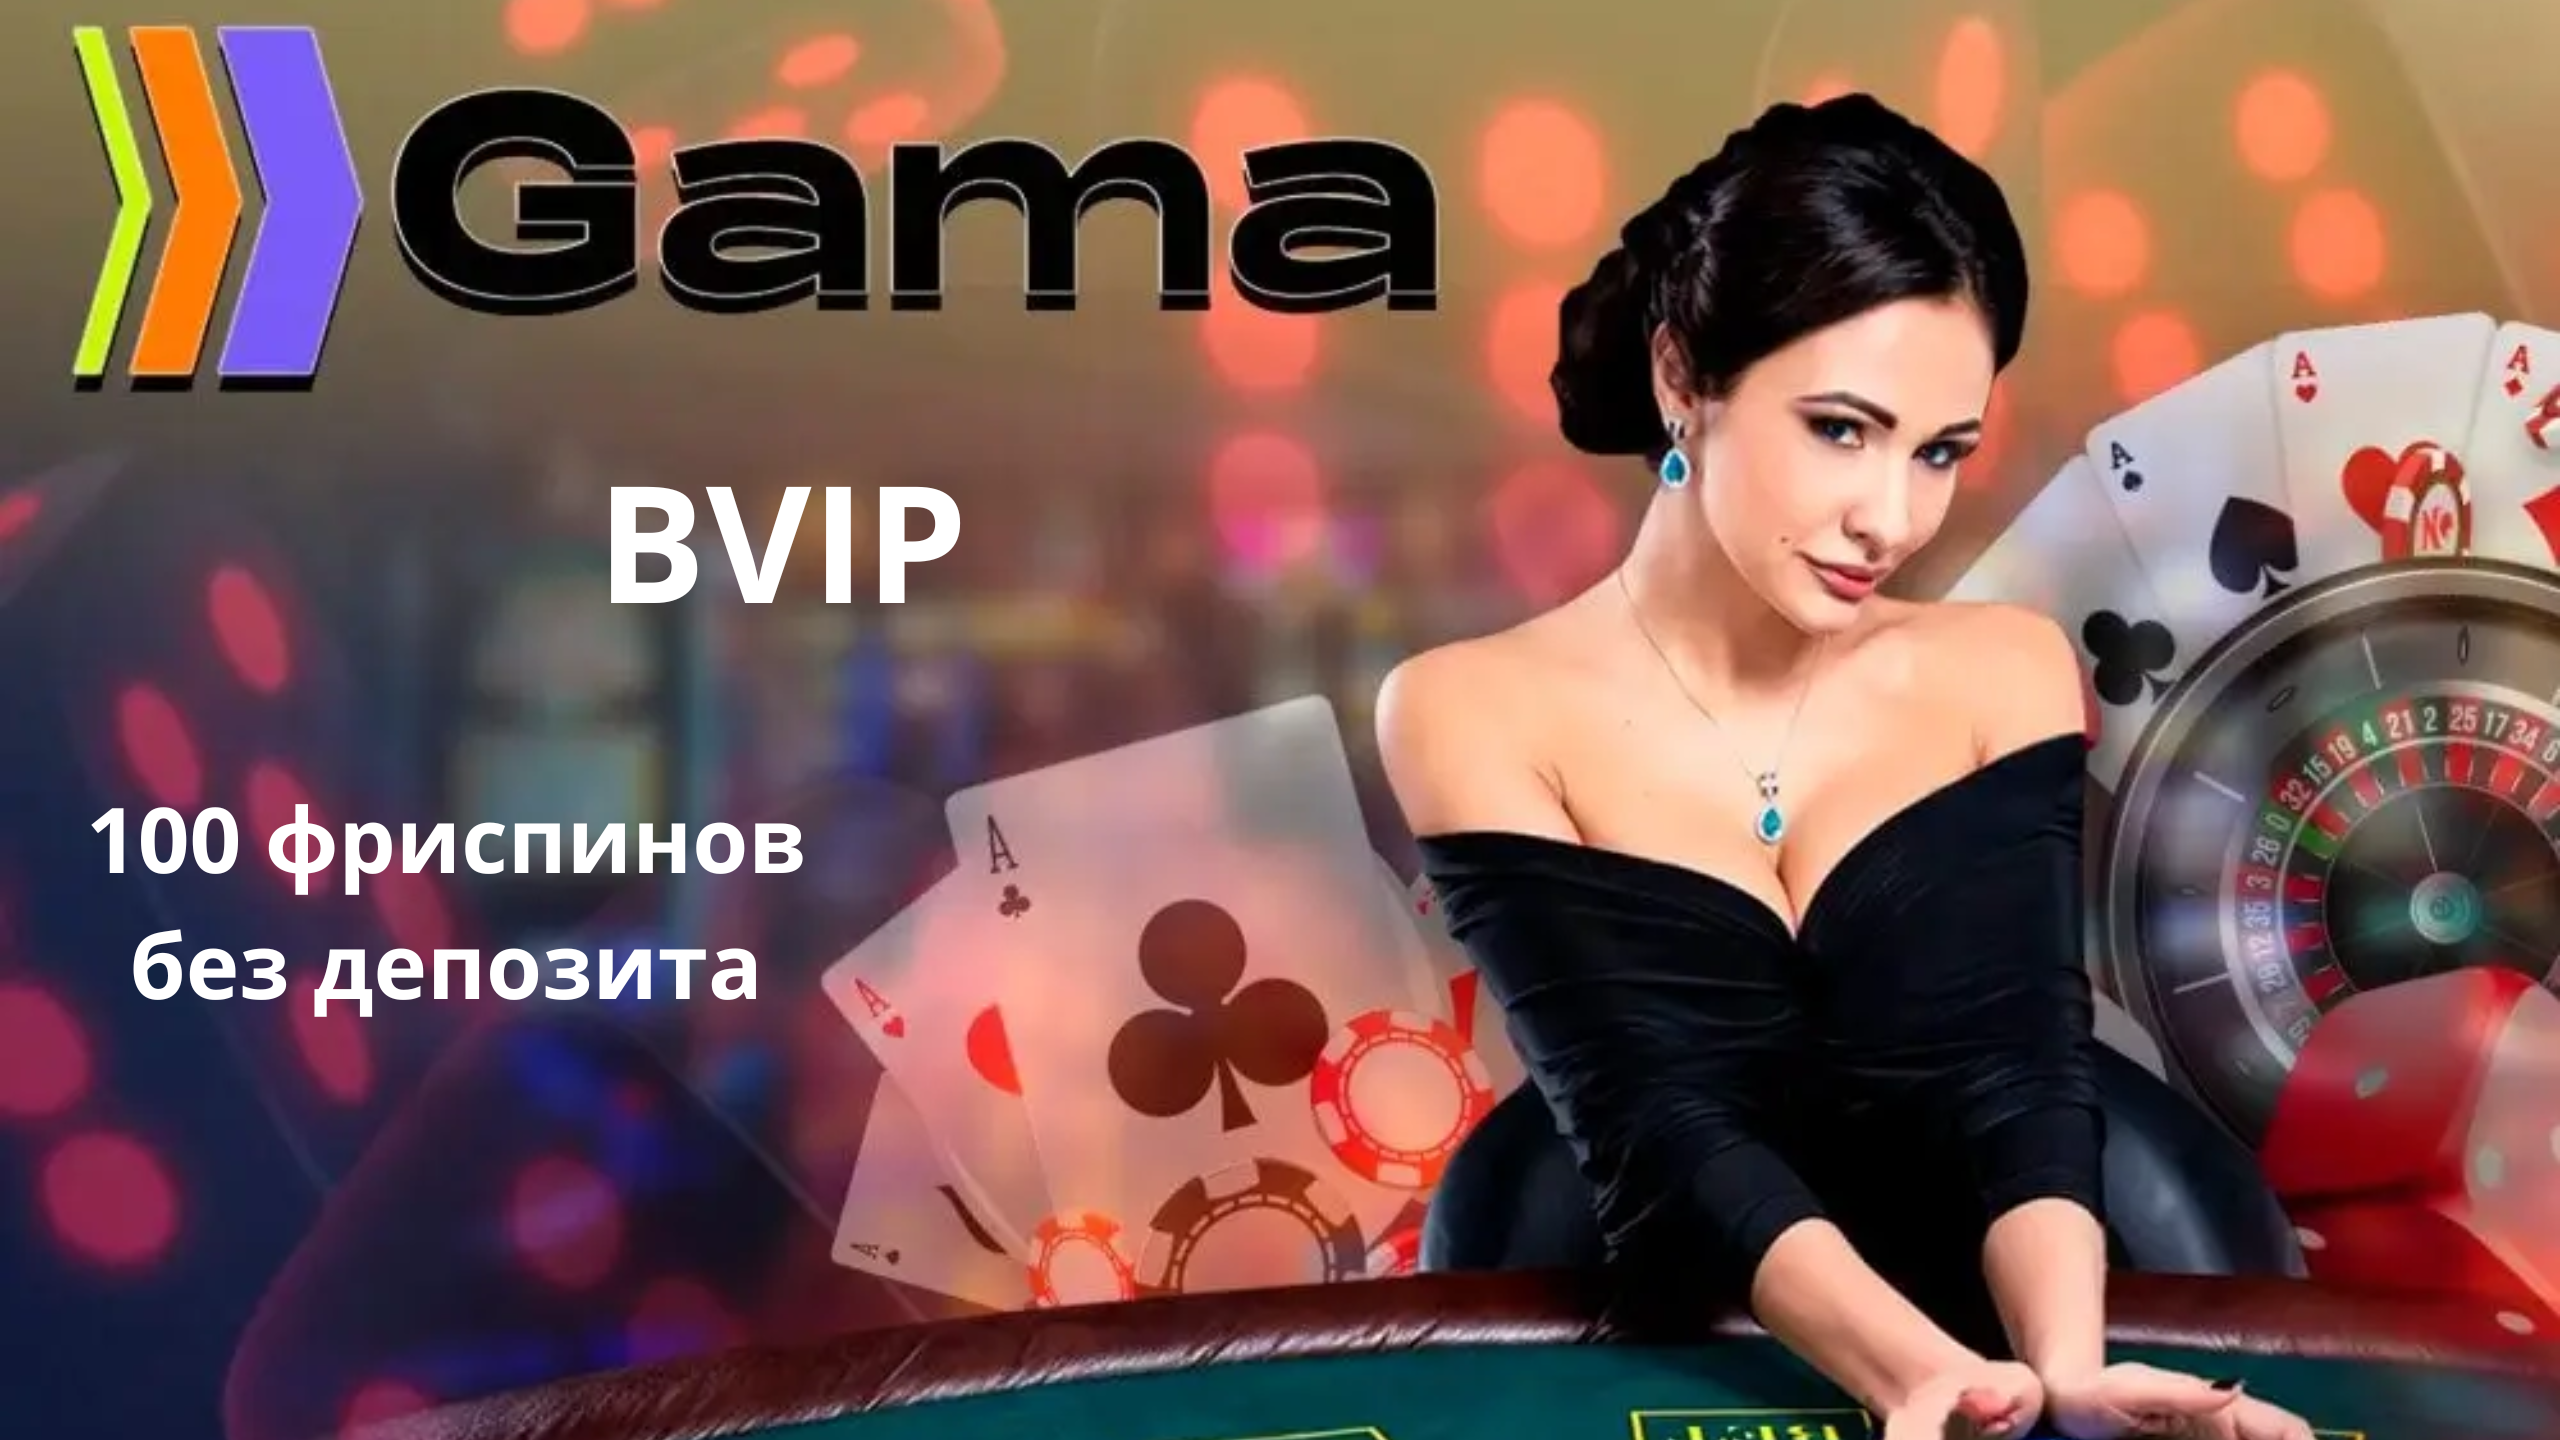 Бонус Луны в казино. Gama casino gamma casino site org ru